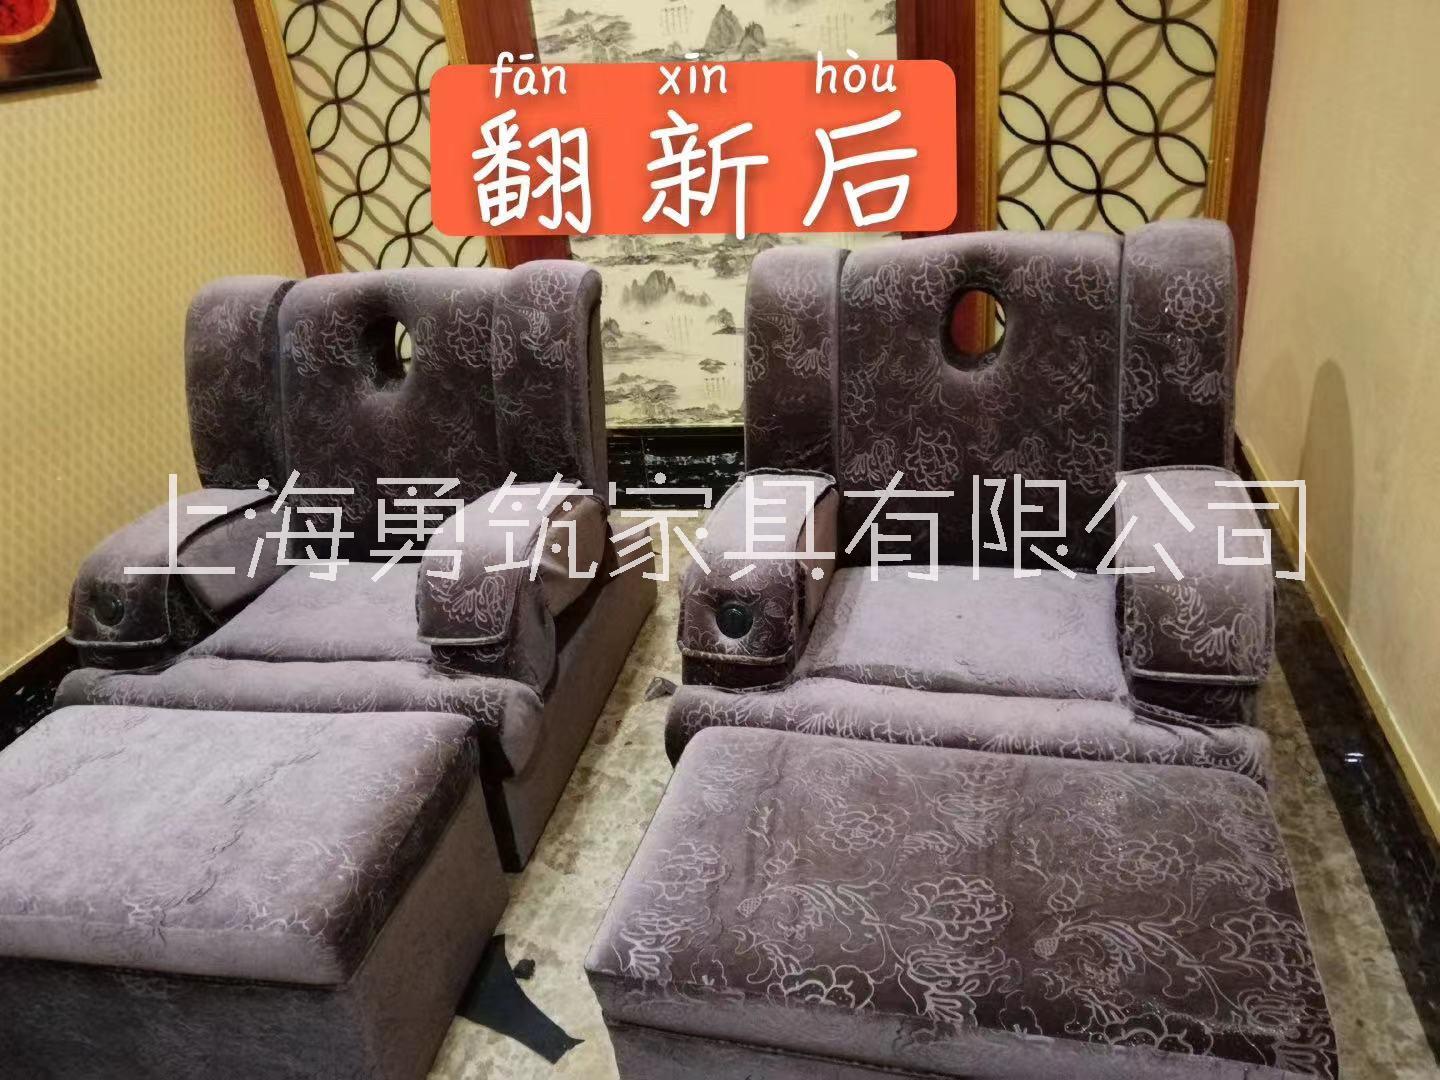 上海市足浴沙发翻新厂家足浴沙发翻新 电动足浴按摩床换面料 椅子换布套 凳子换皮套